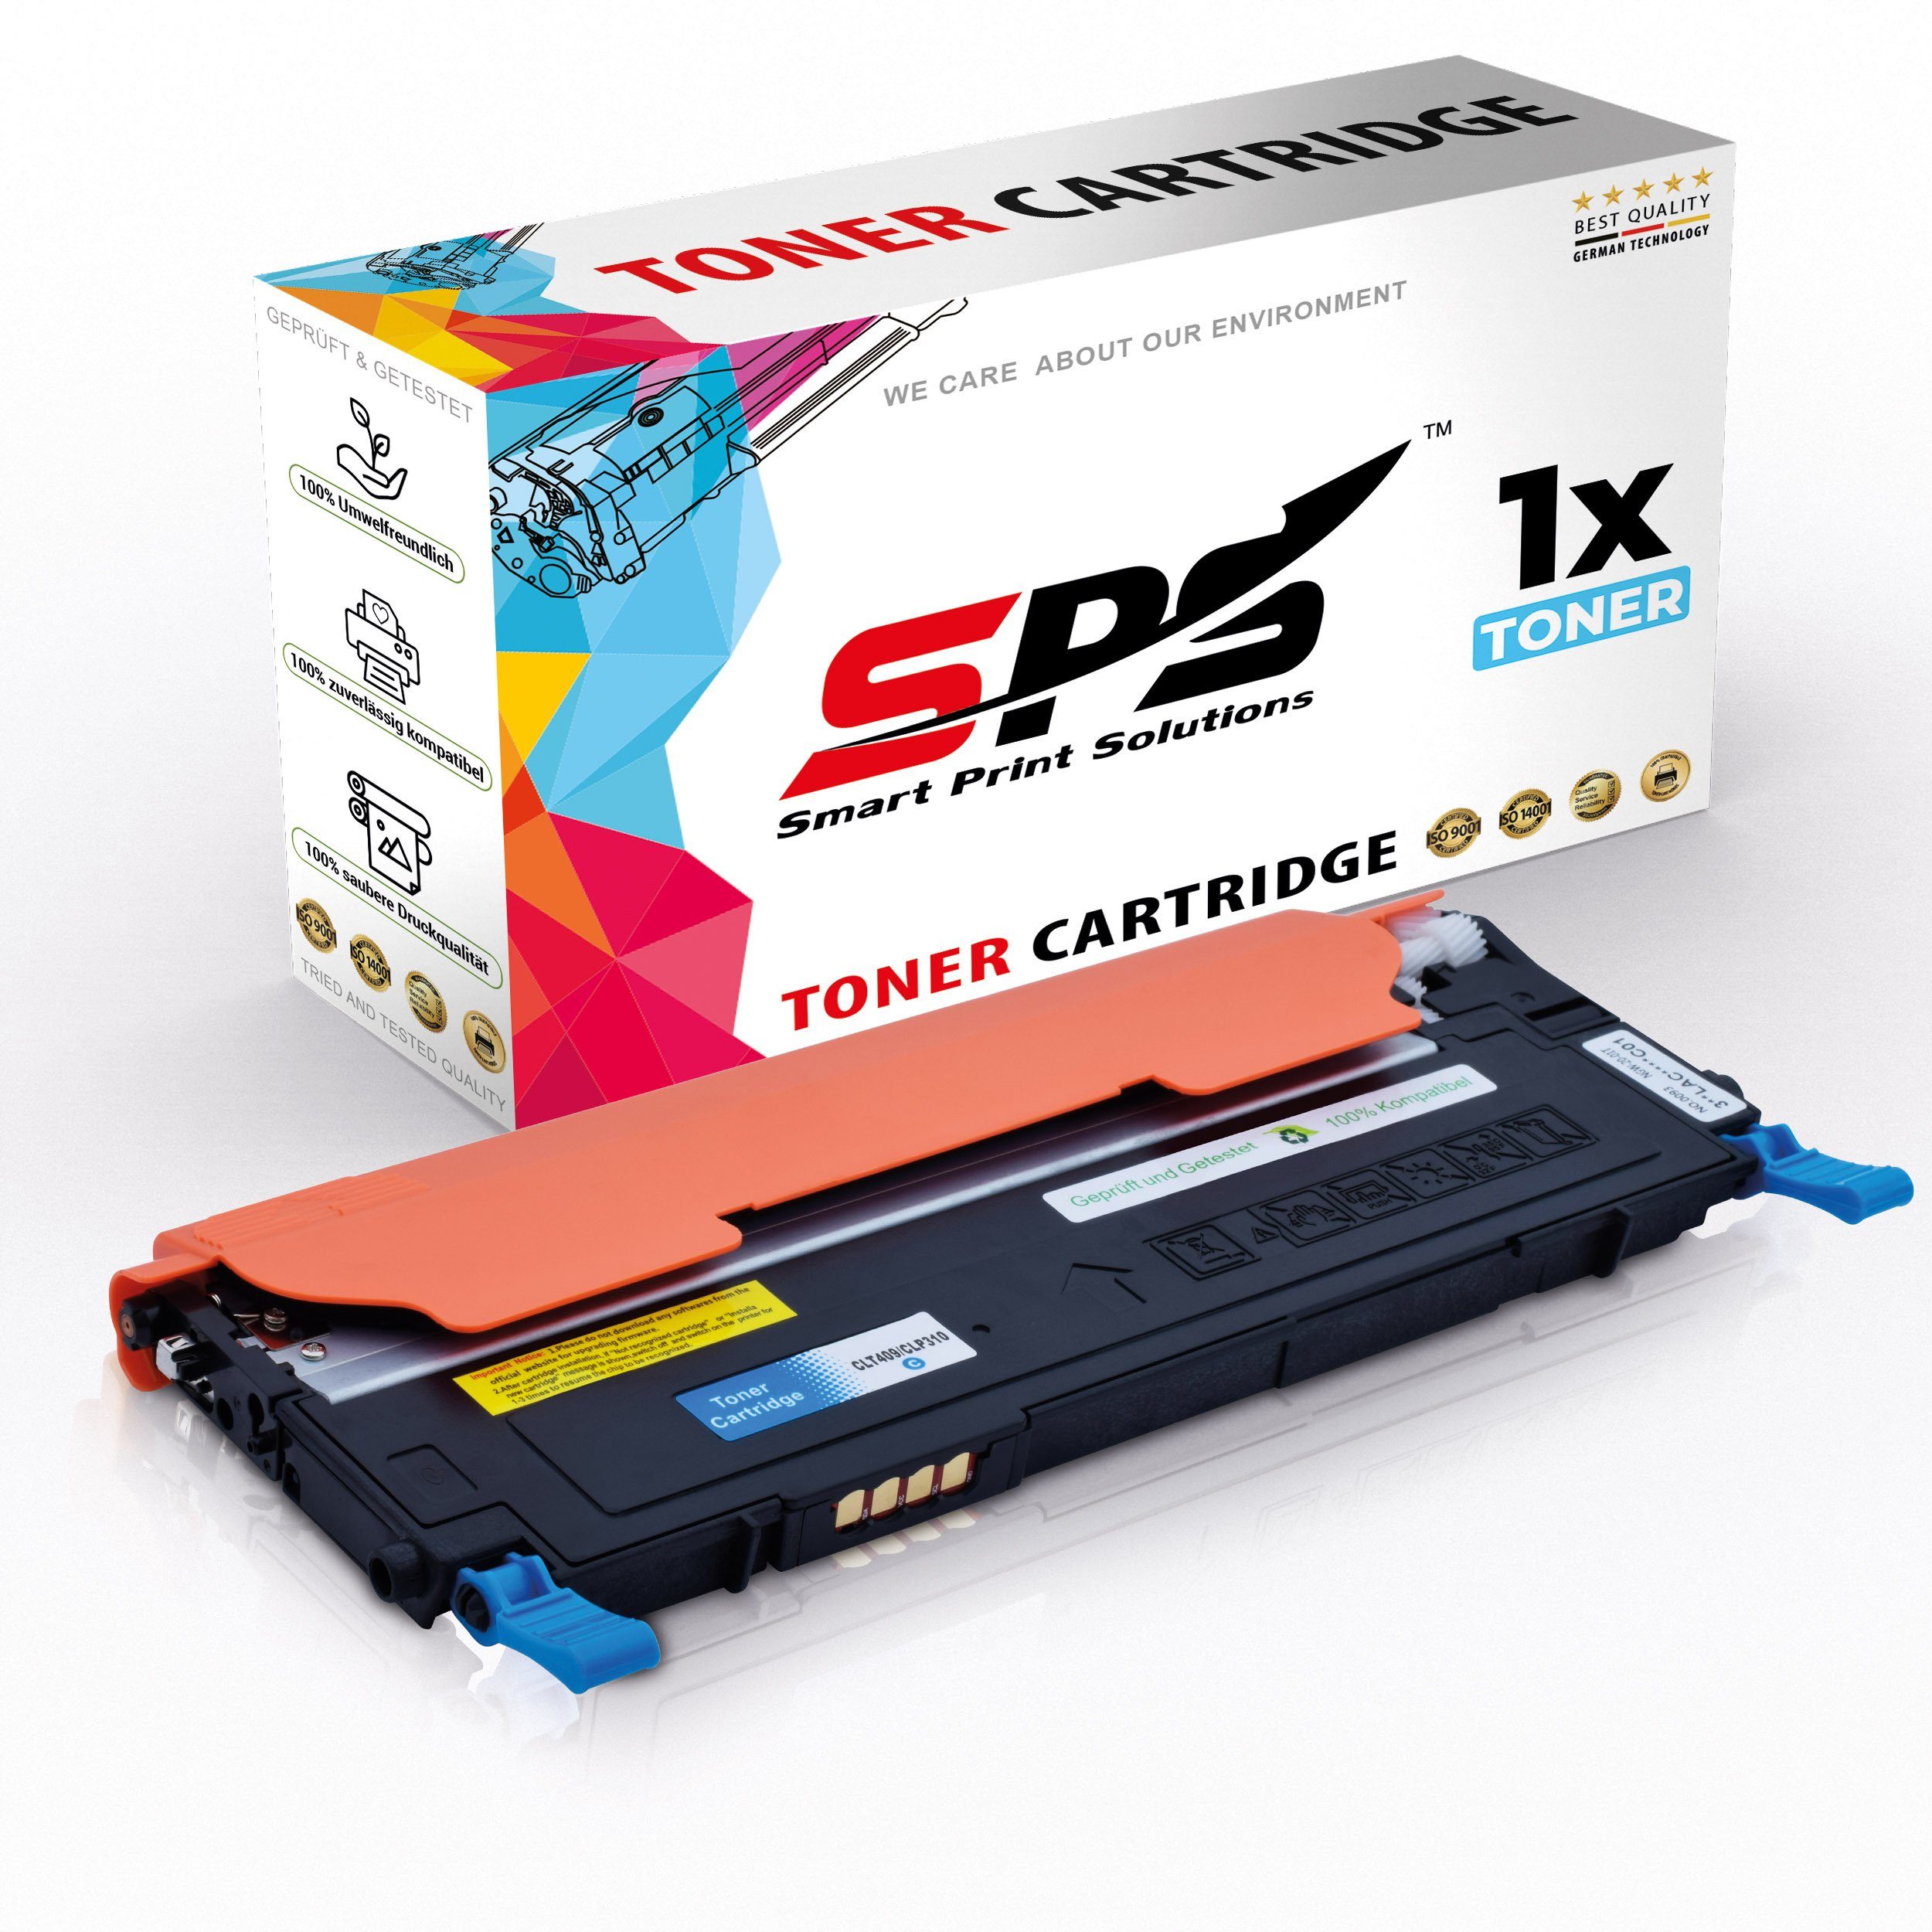 Samsung Pack) SPS C4092 Kompatibel CLP-315CLX für Tonerkartusche CLT-C409S, (1er